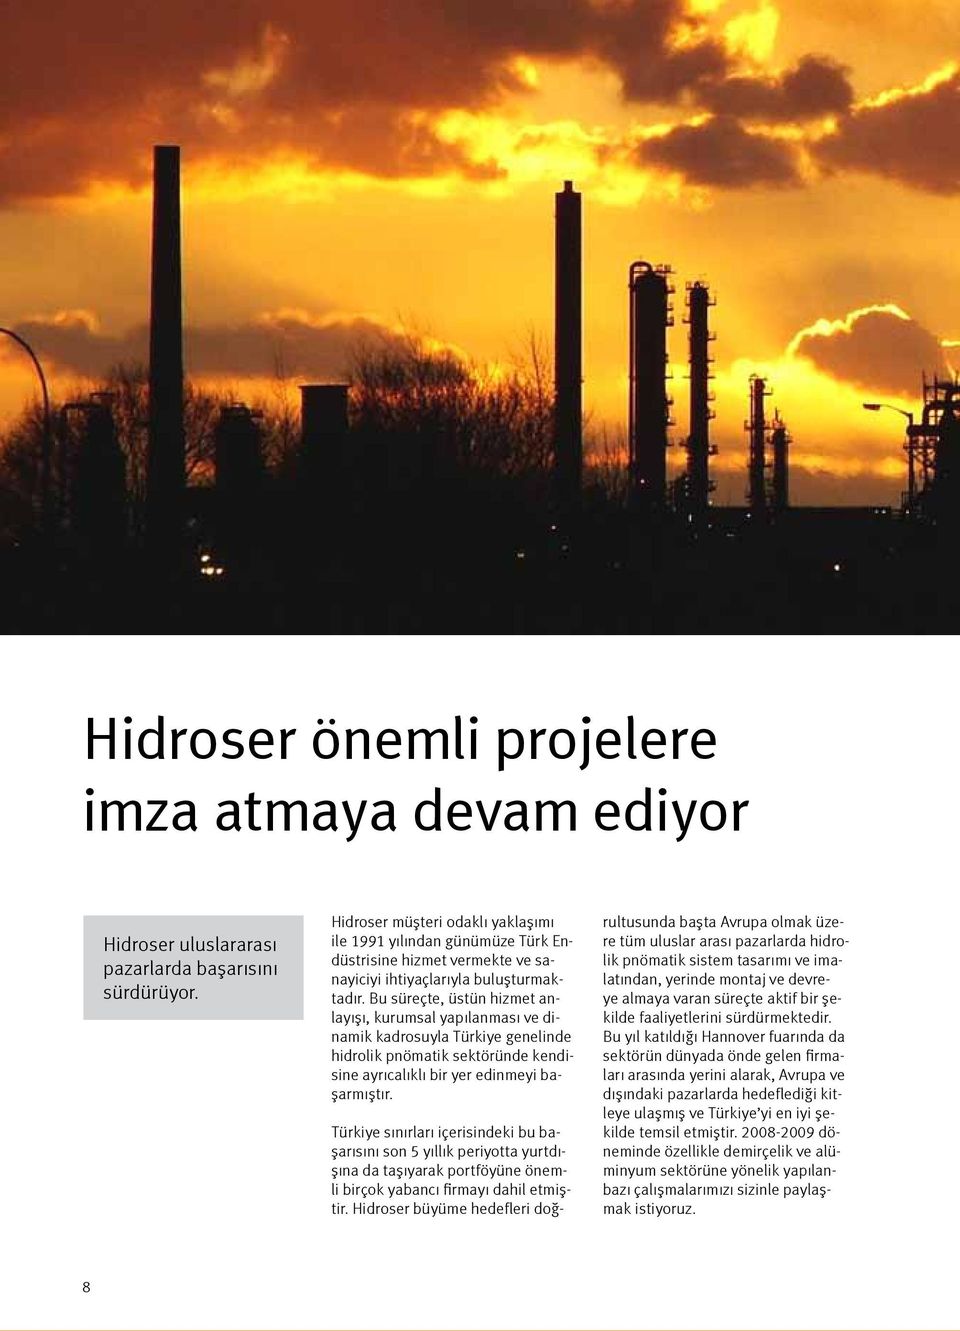 Bu süreçte, üstün hizmet anlayışı, kurumsal yapılanması ve dinamik kadrosuyla Türkiye genelinde hidrolik pnömatik sektöründe kendisine ayrıcalıklı bir yer edinmeyi başarmıştır.